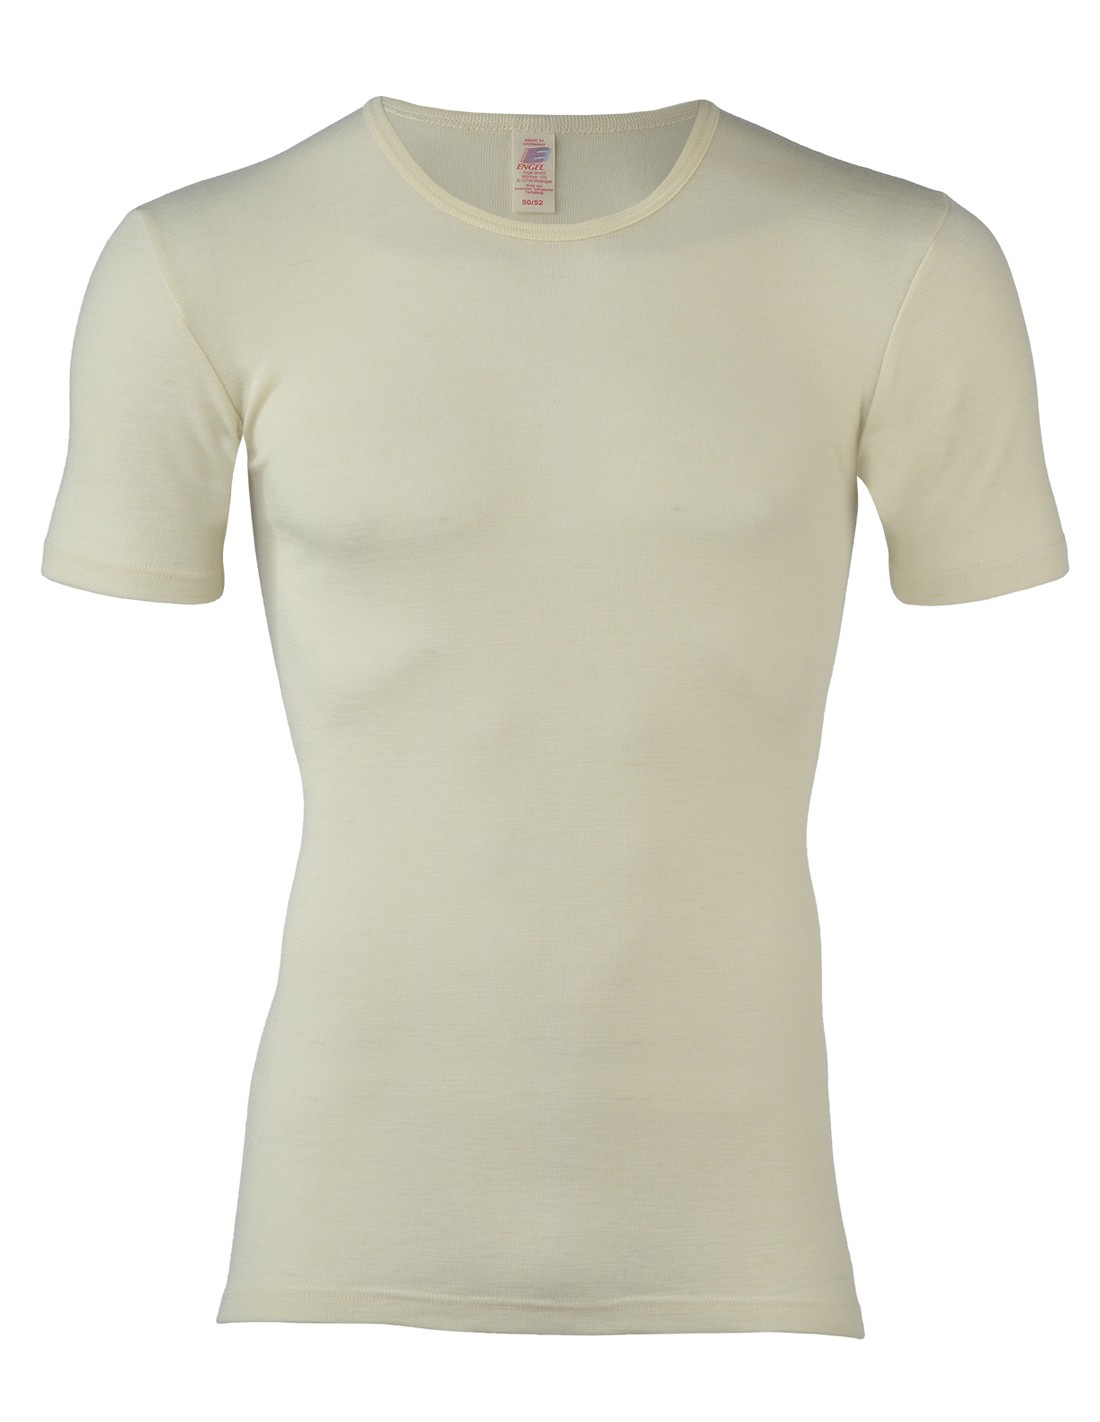 Image of Heren T-Shirt Wit Merino Wol Engel Natur, Maat 50/52 - Large